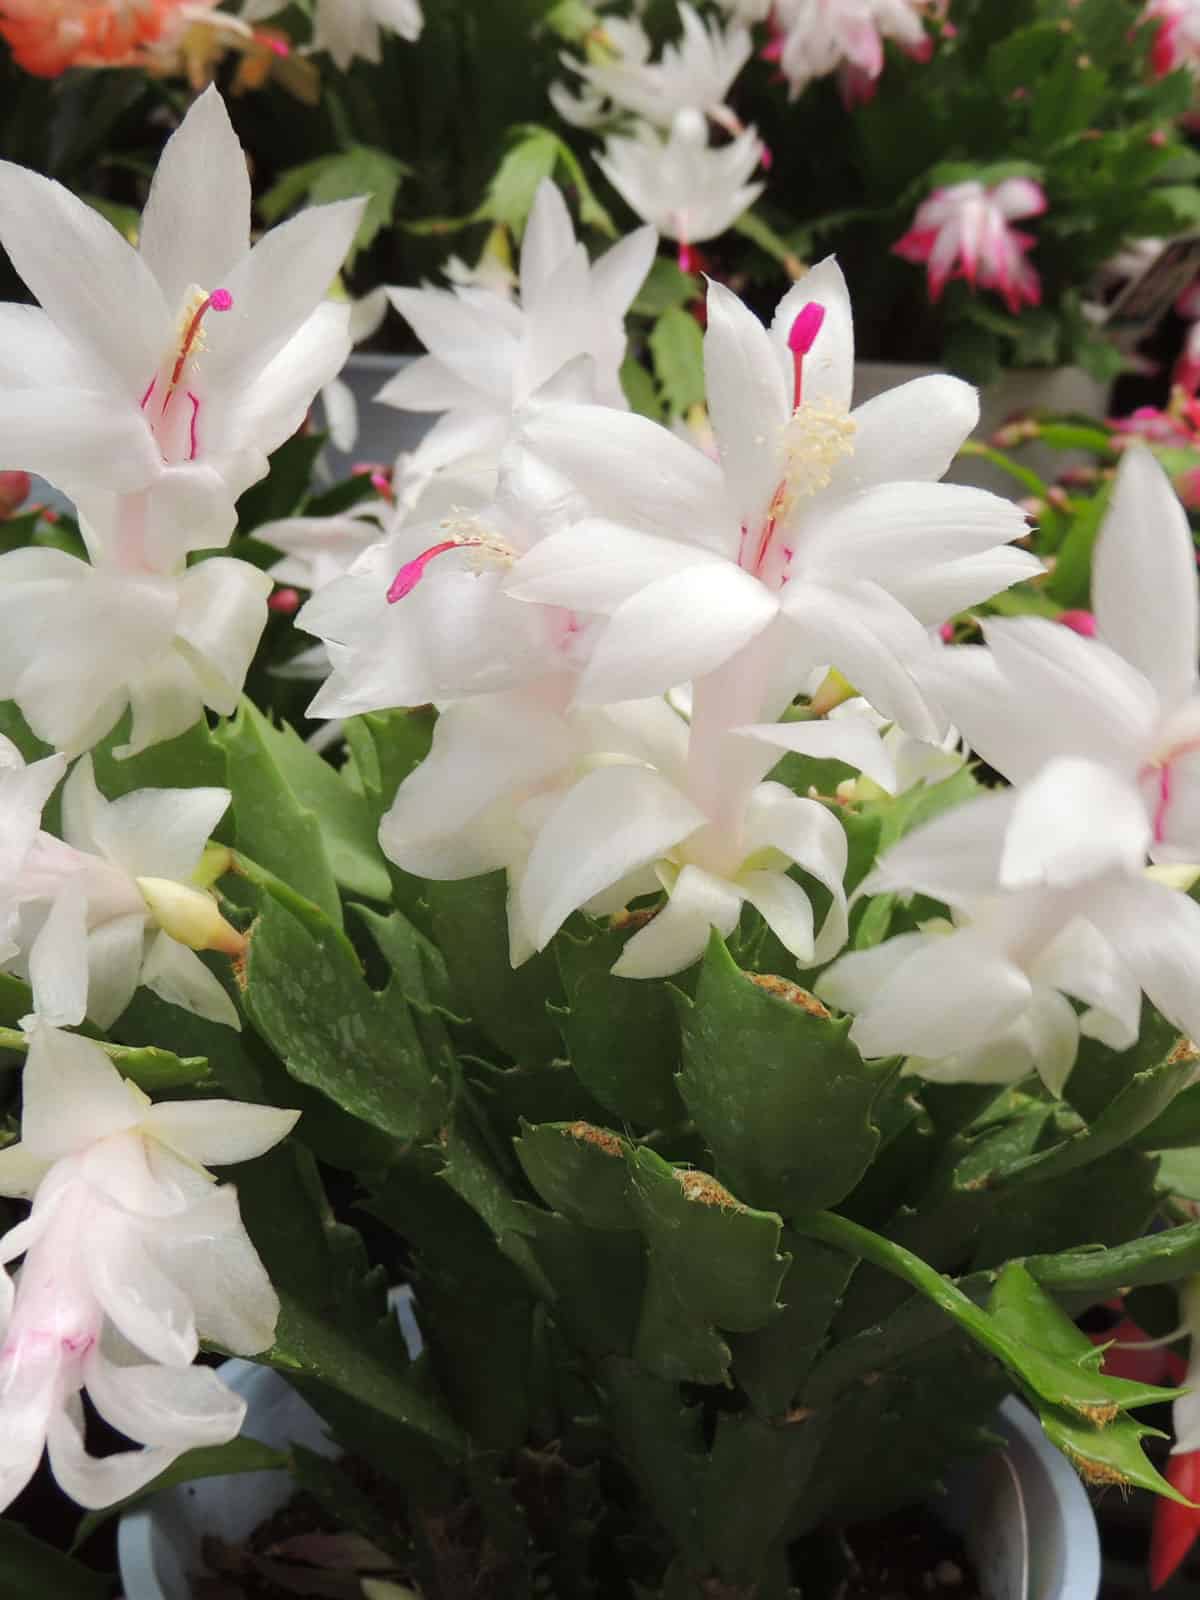 Bright white petals of a Christmas Cactus 